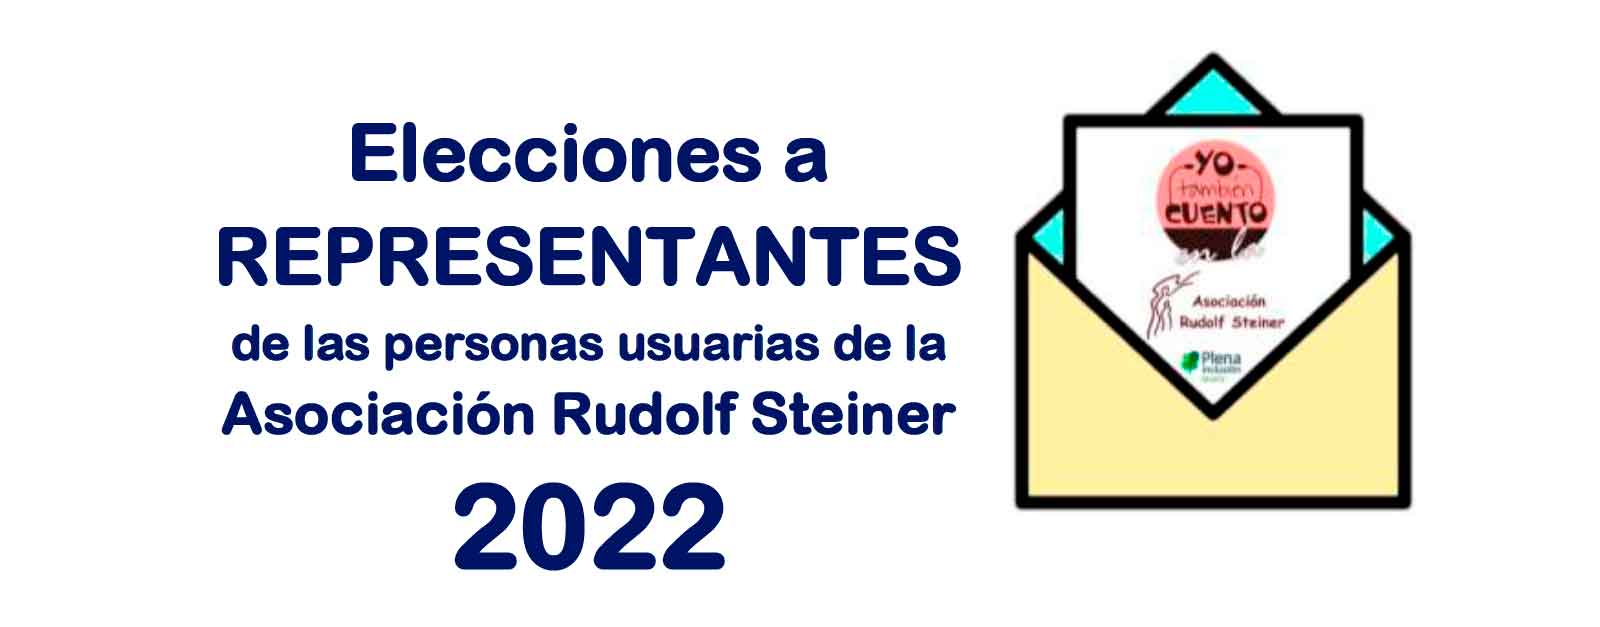 Elecciones a representantes de las personas con discapacidad Rudolf Steiner